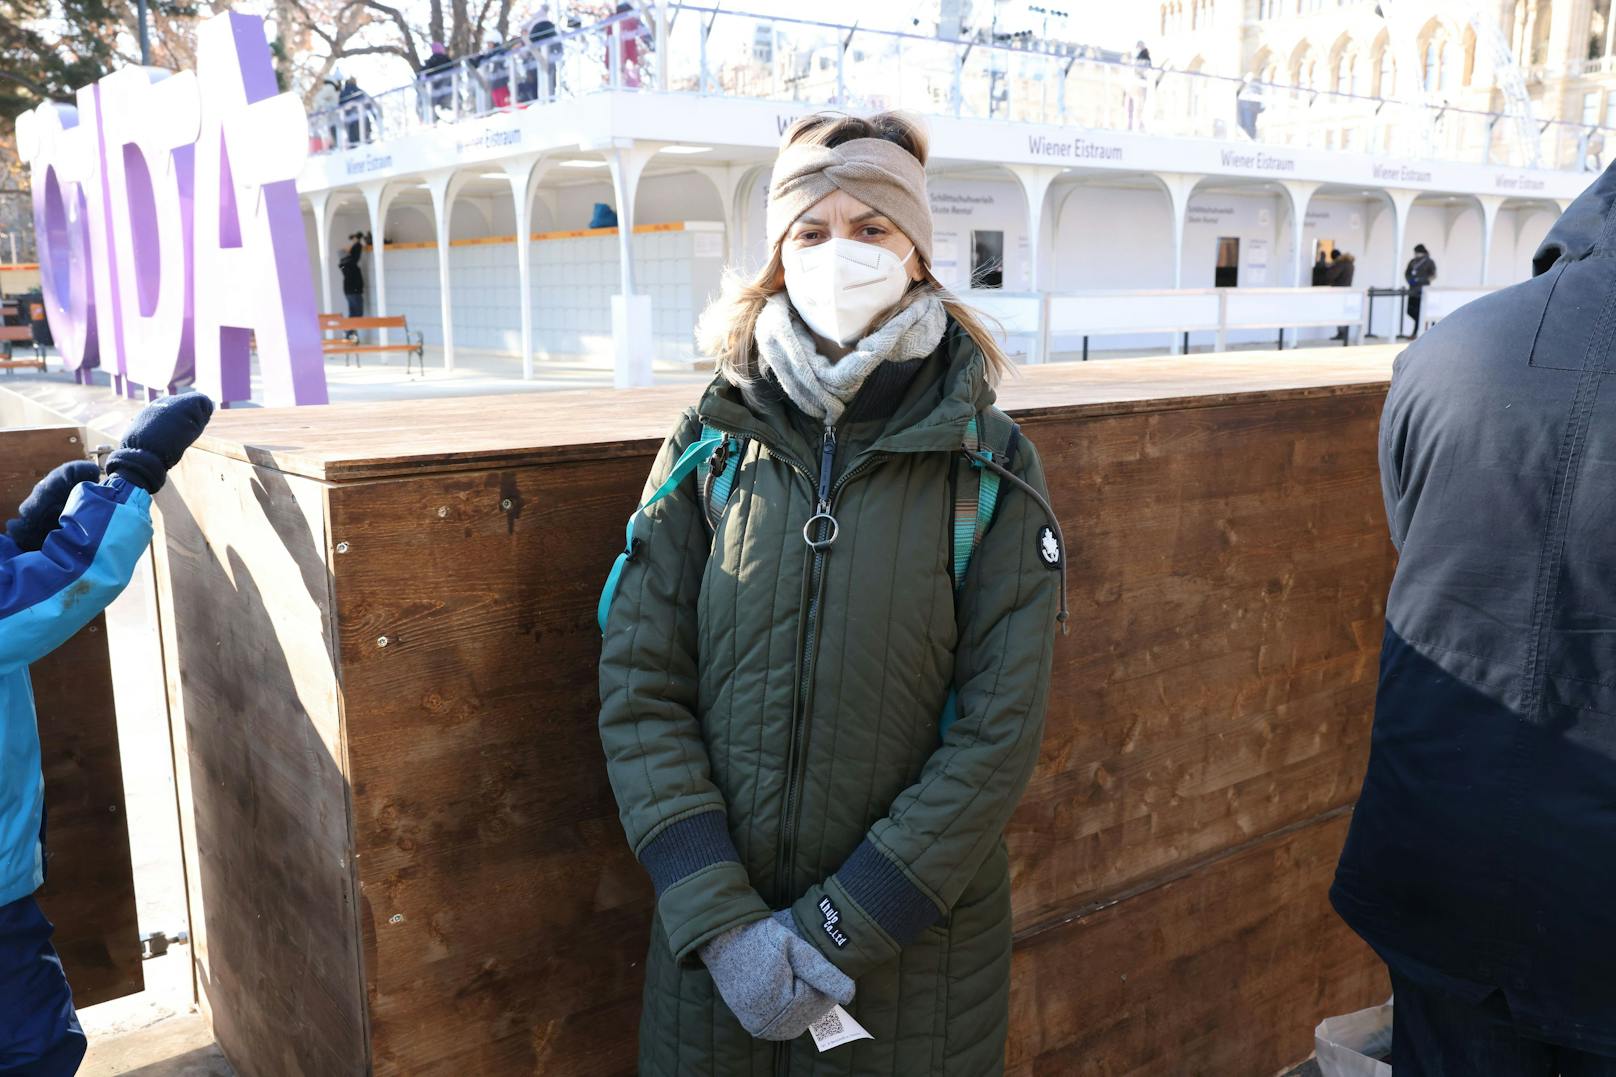 Bernadette (39) wollte eigentlich Skifahren gehen. Weil auf den Pisten so viel los ist, kam sie mit Familie zum Wiener Eitraum – und musste sich eineinhalb Stunden gedulden, bis es aufs Eis ging: "Wir haben in Wien wenig Möglichkeiten, raus zu gehen und das ist mit Aufwand und Zeit verbunden." Auch sie will nicht wieder kommen.